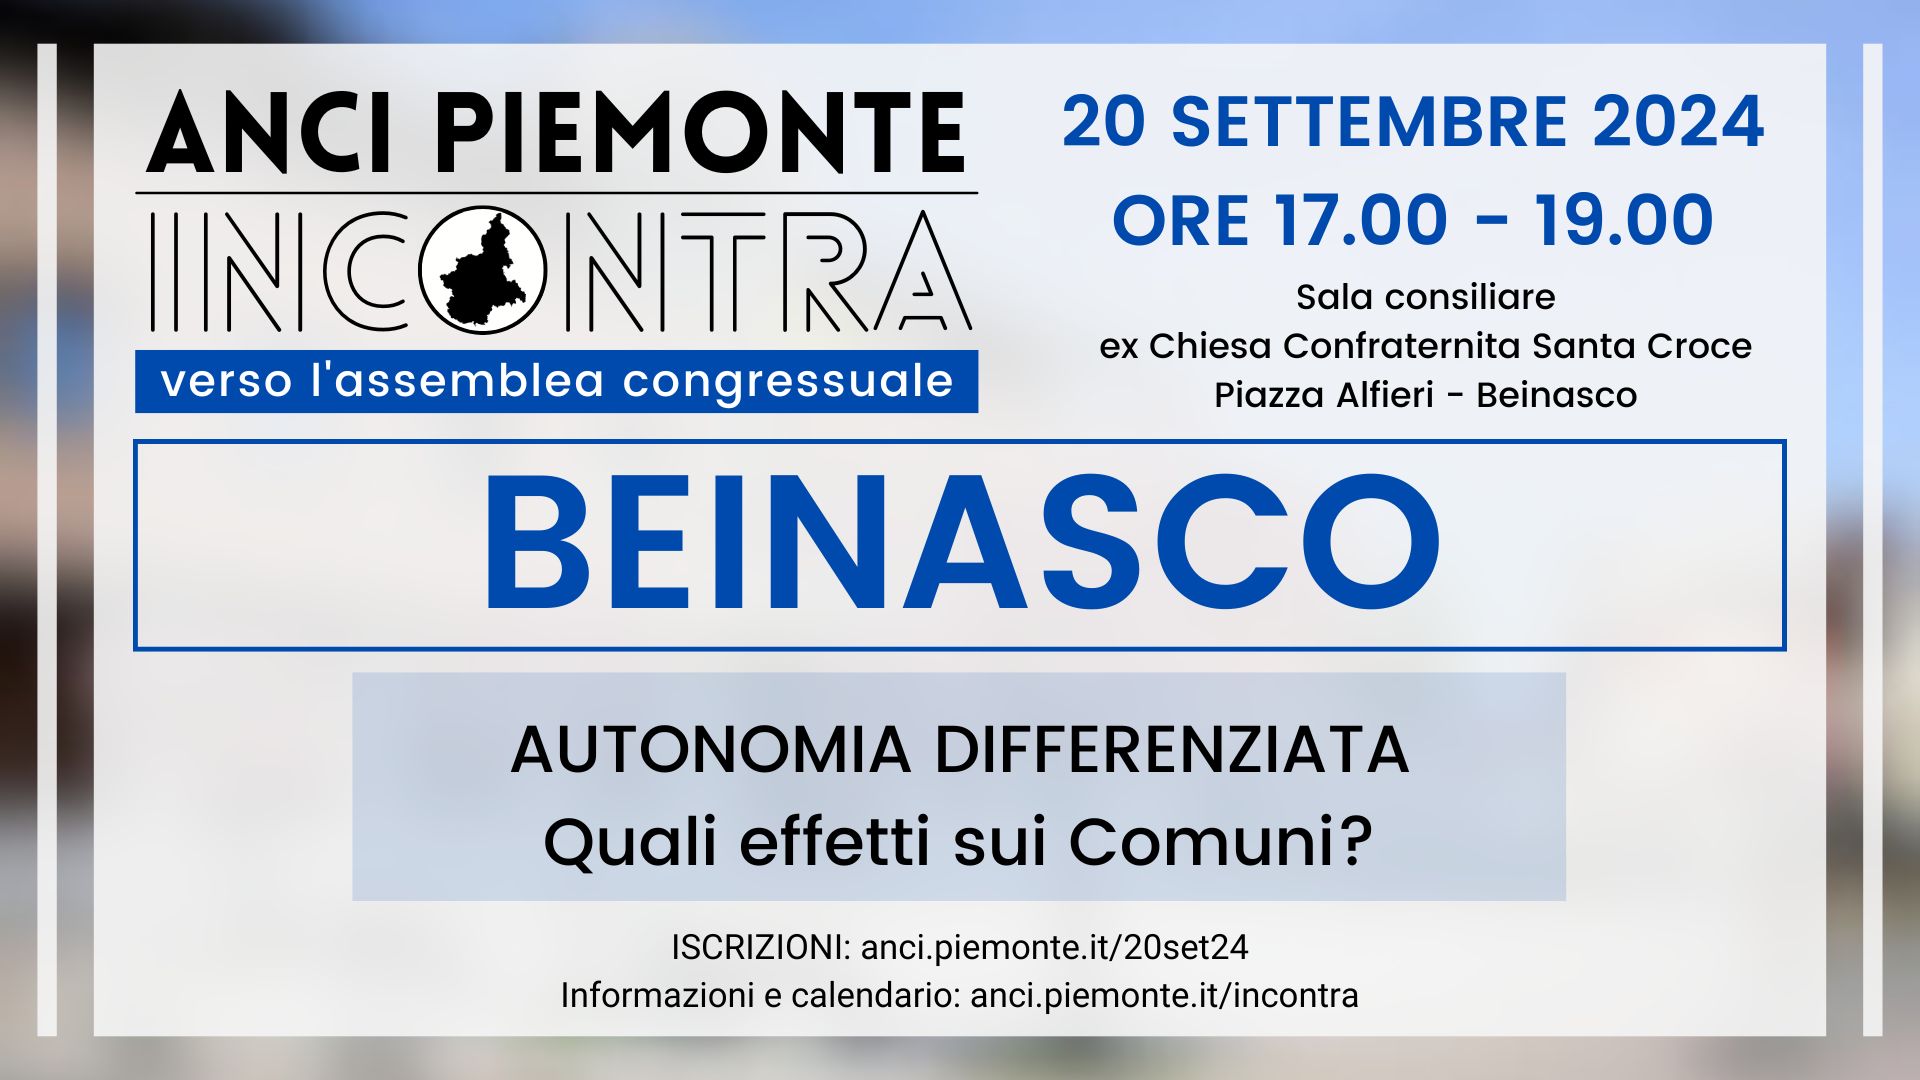 ANCI Piemonte Incontra - Beinasco 20 settembre